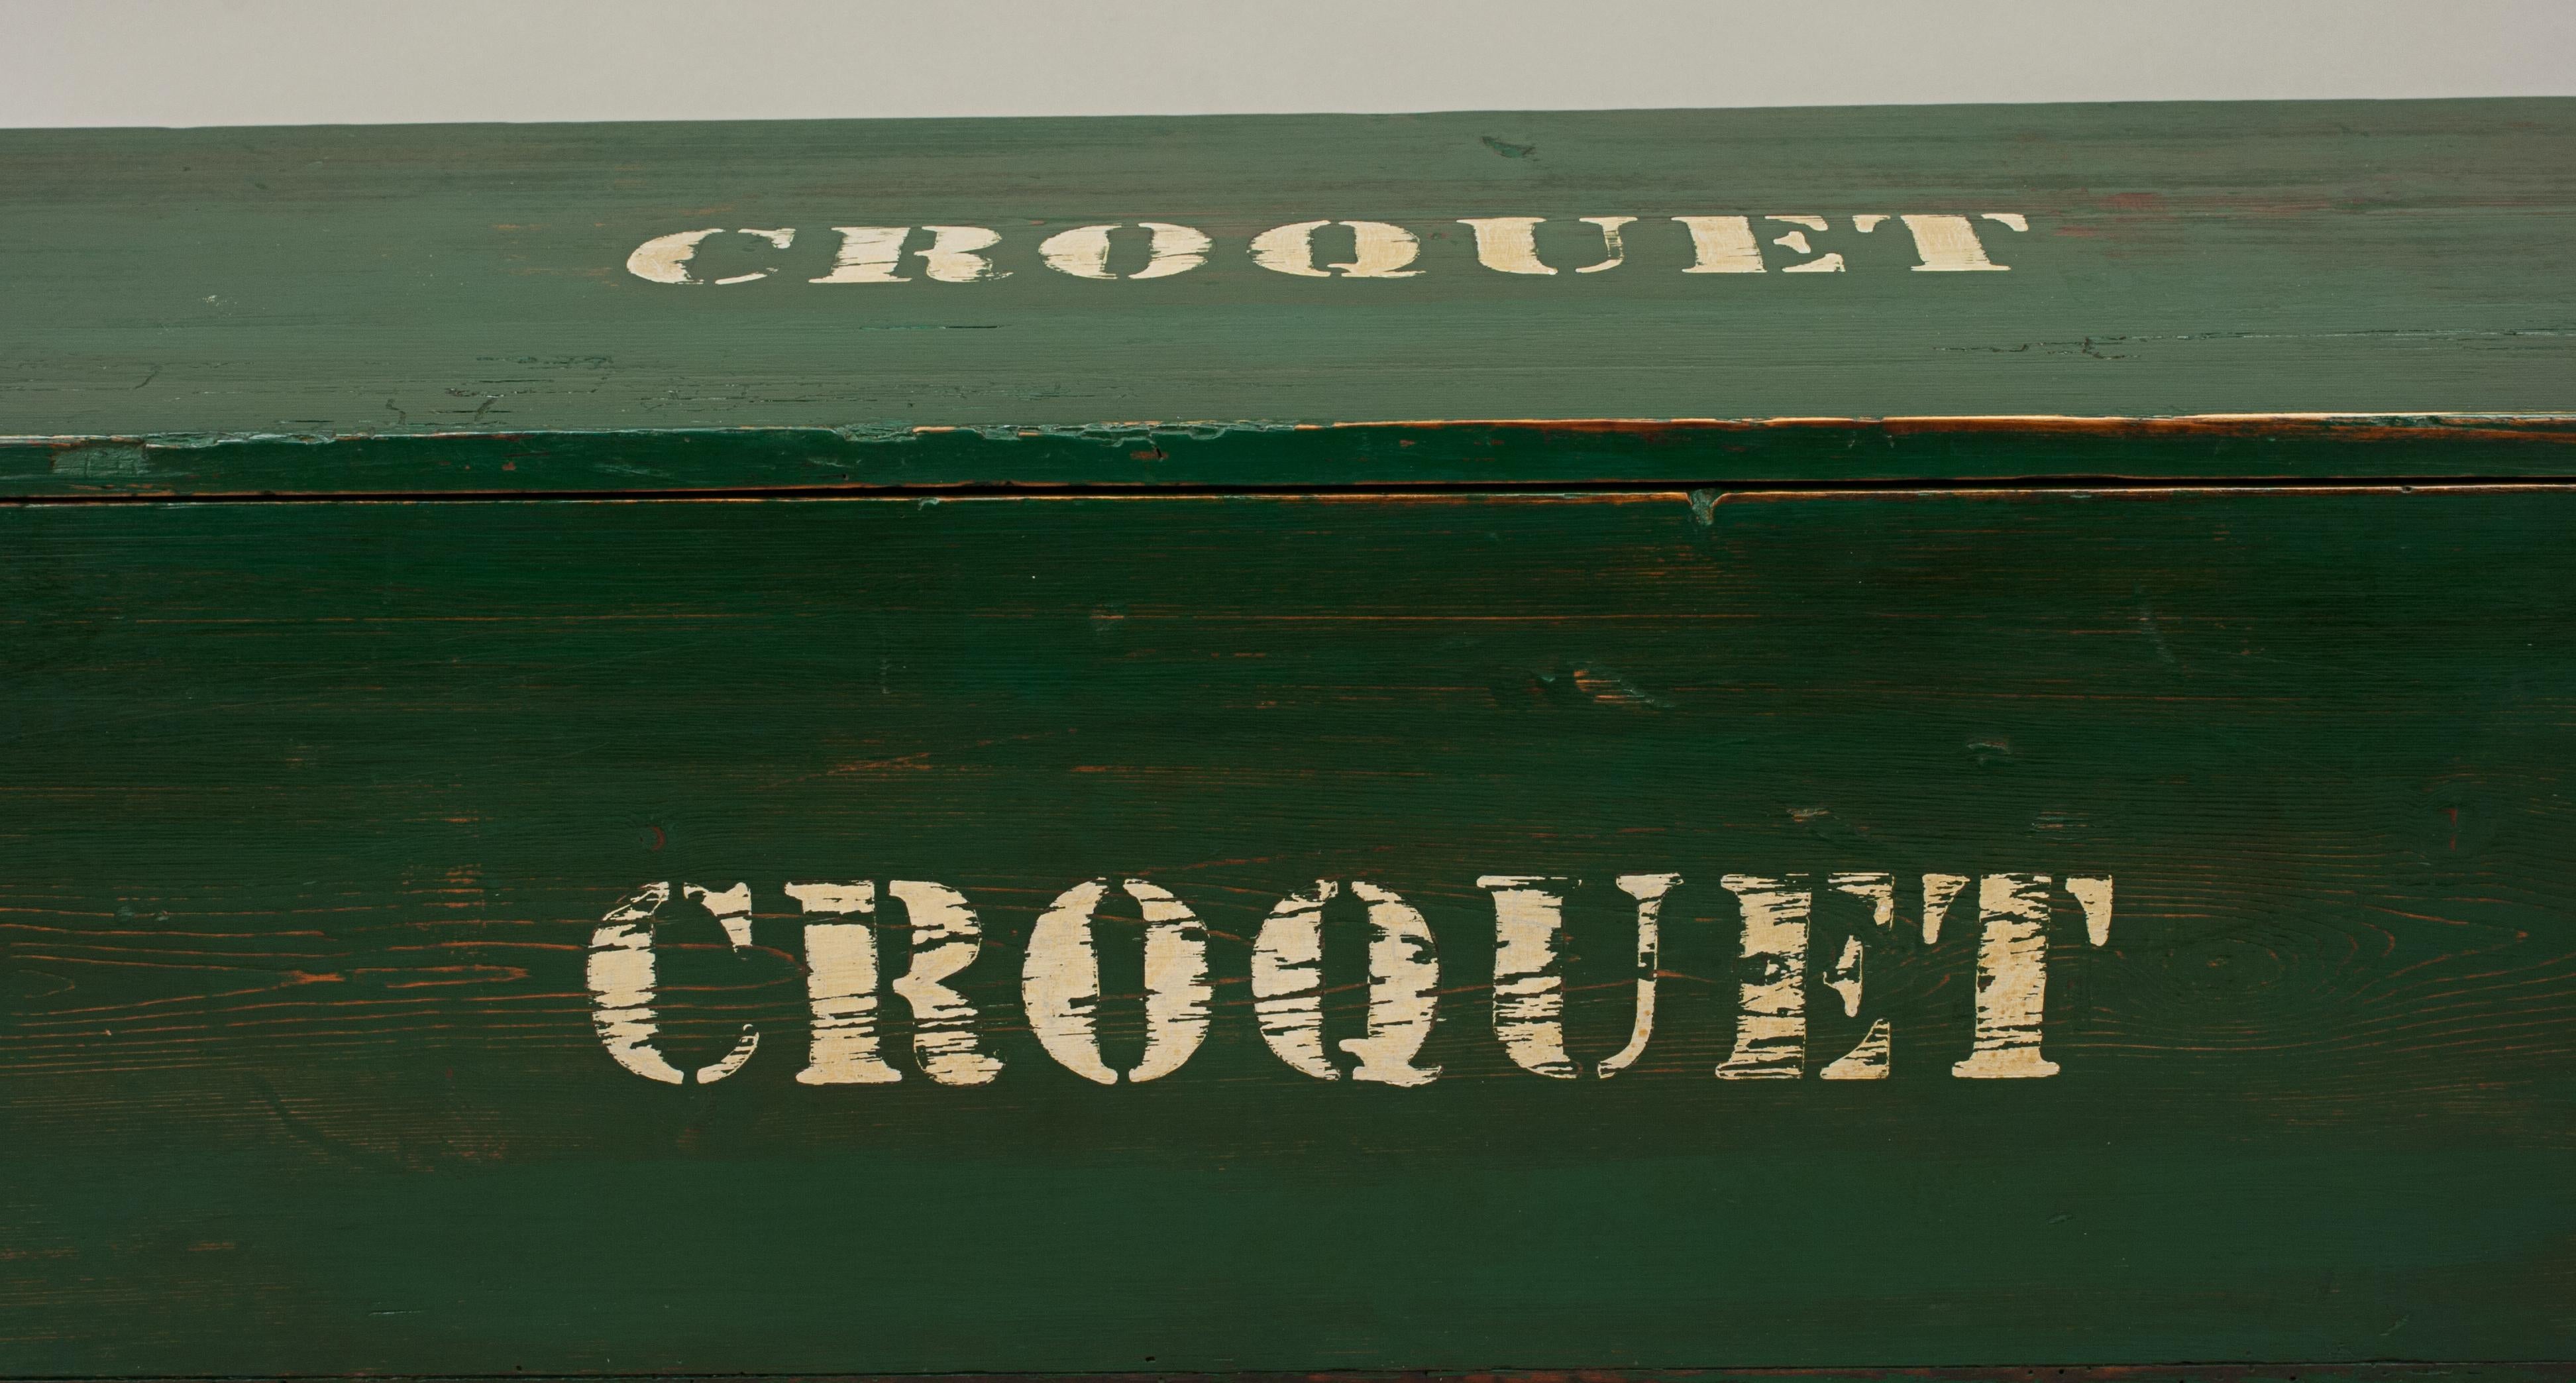 Bateman Stroud Regulation Croquet Set in Pine Box 7